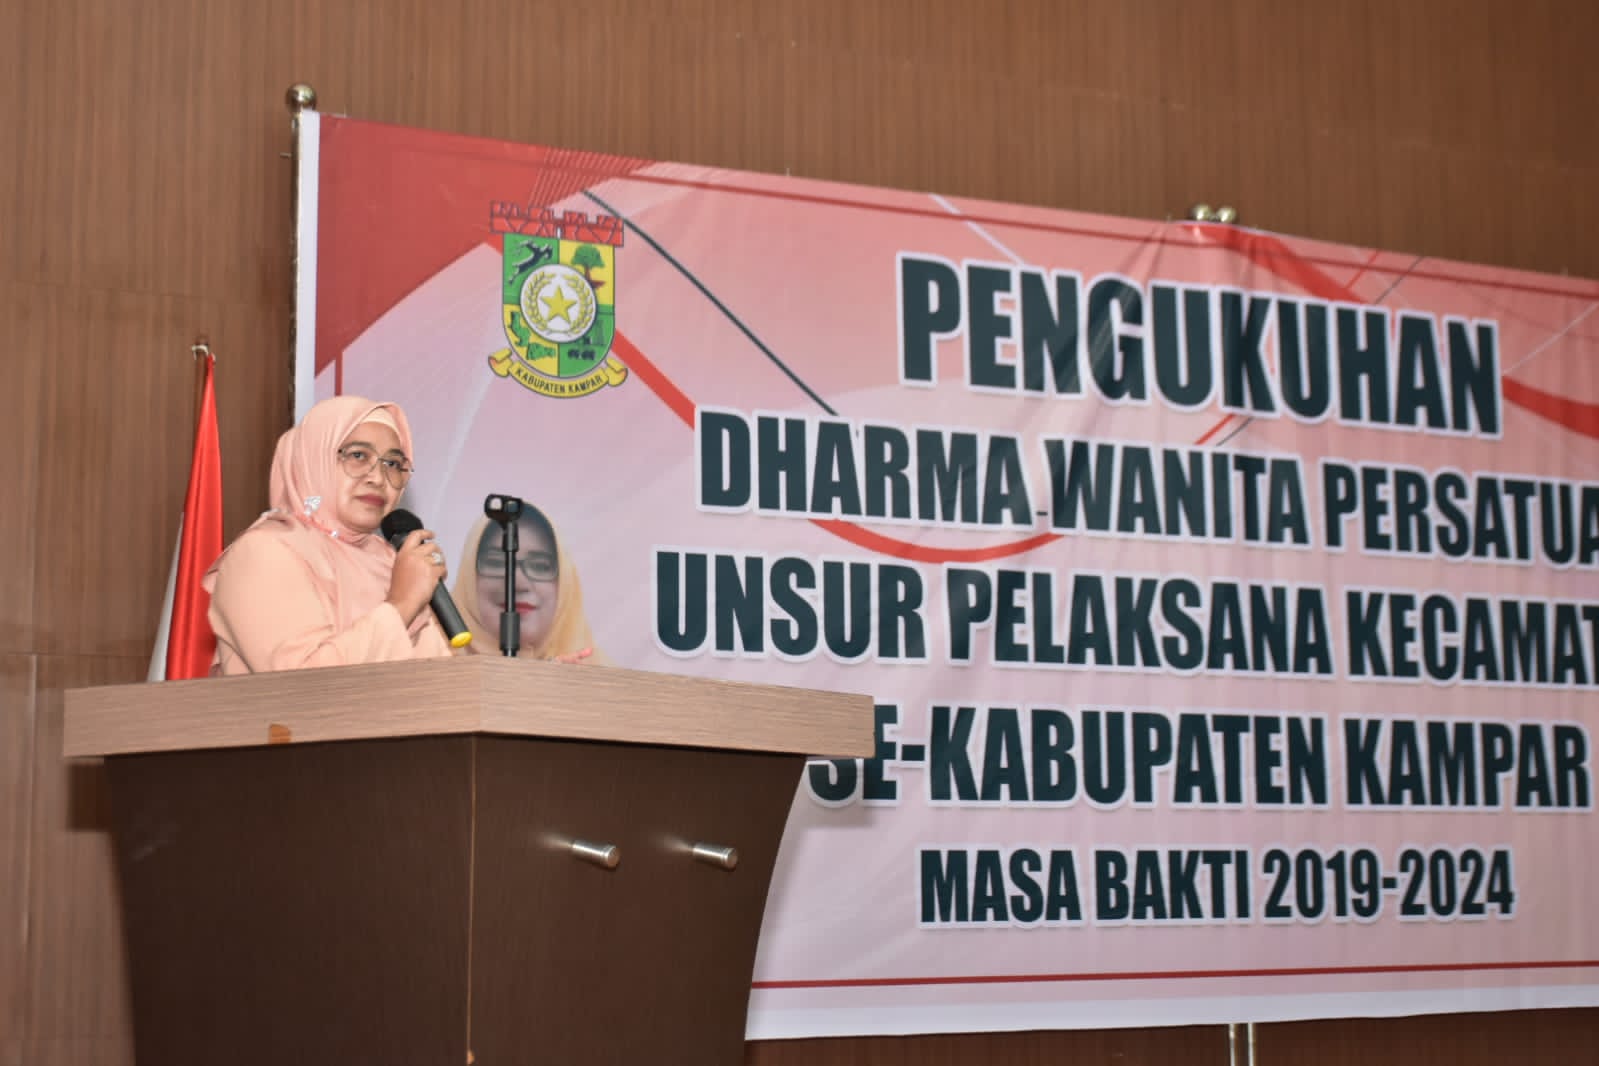 Pengukuhan DWP Unsur Pelaksana Kecamatan Se Kabupaten Kampar 2019-2024 Baru Terlaksana Akibat Covid-19